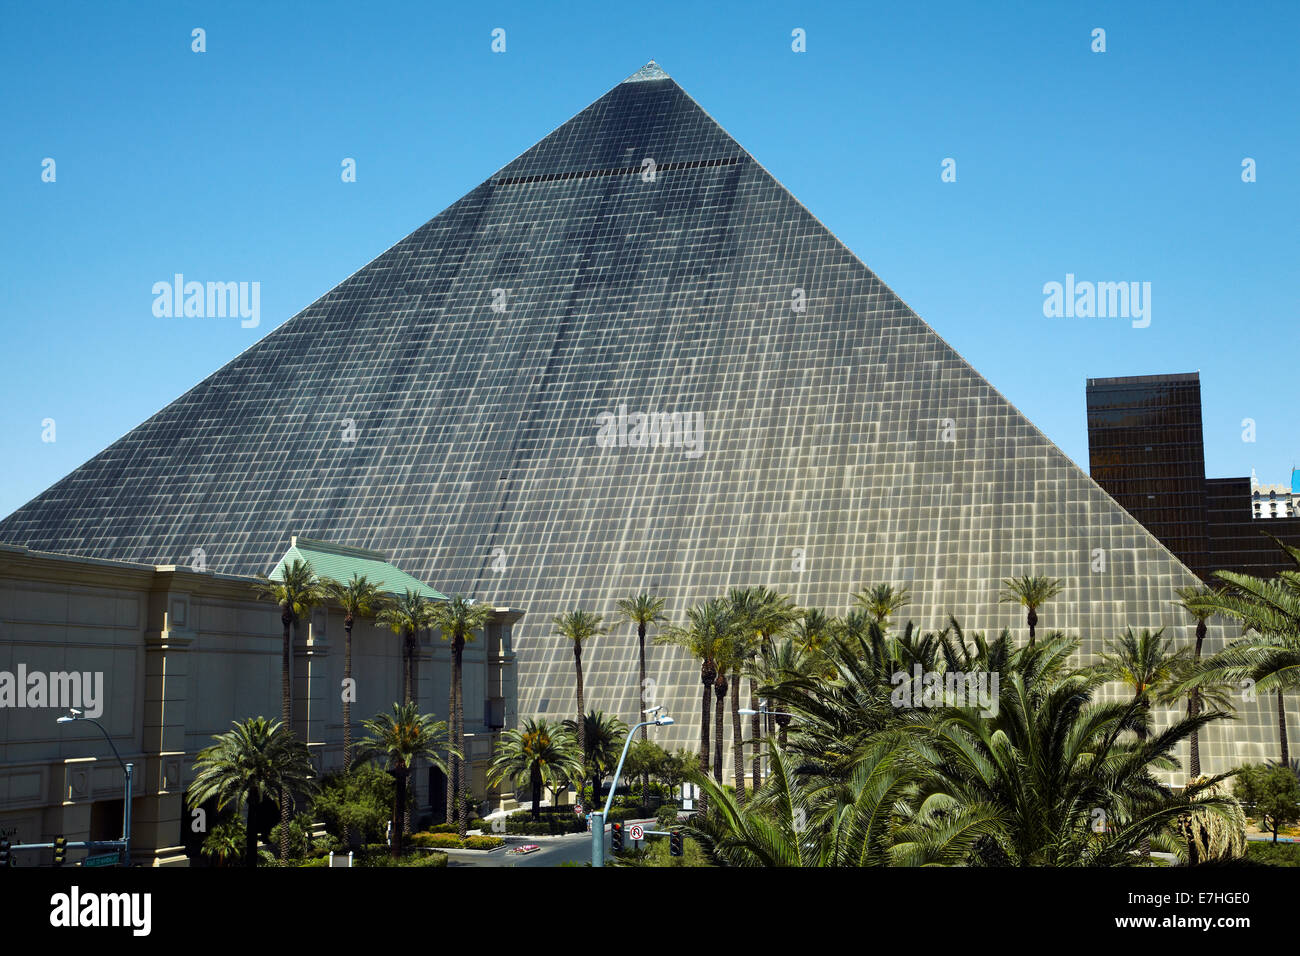 ¿Cómo se llama el casino de la pirámide?